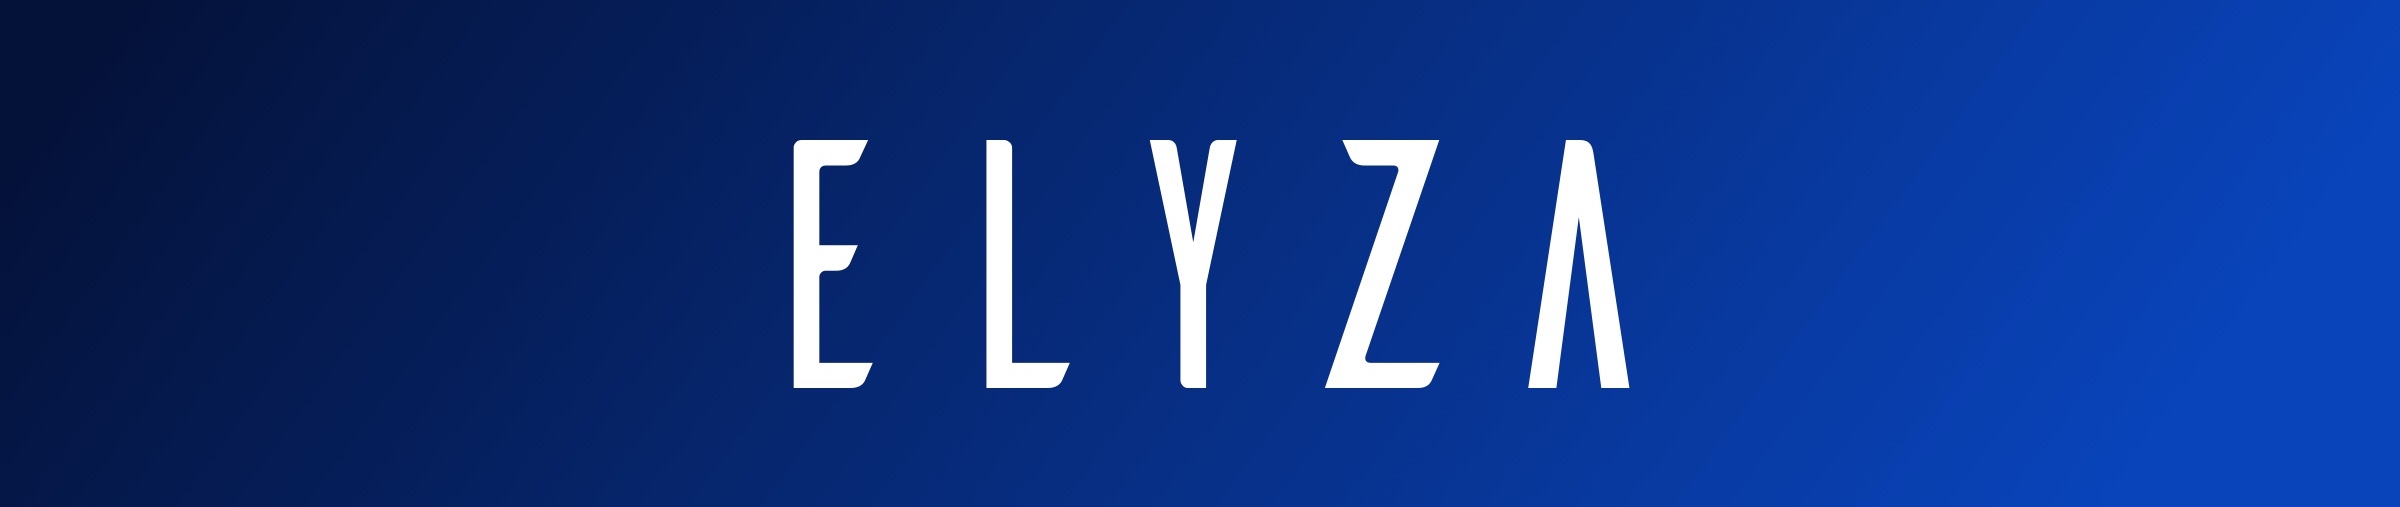 elyza_logo.jpeg